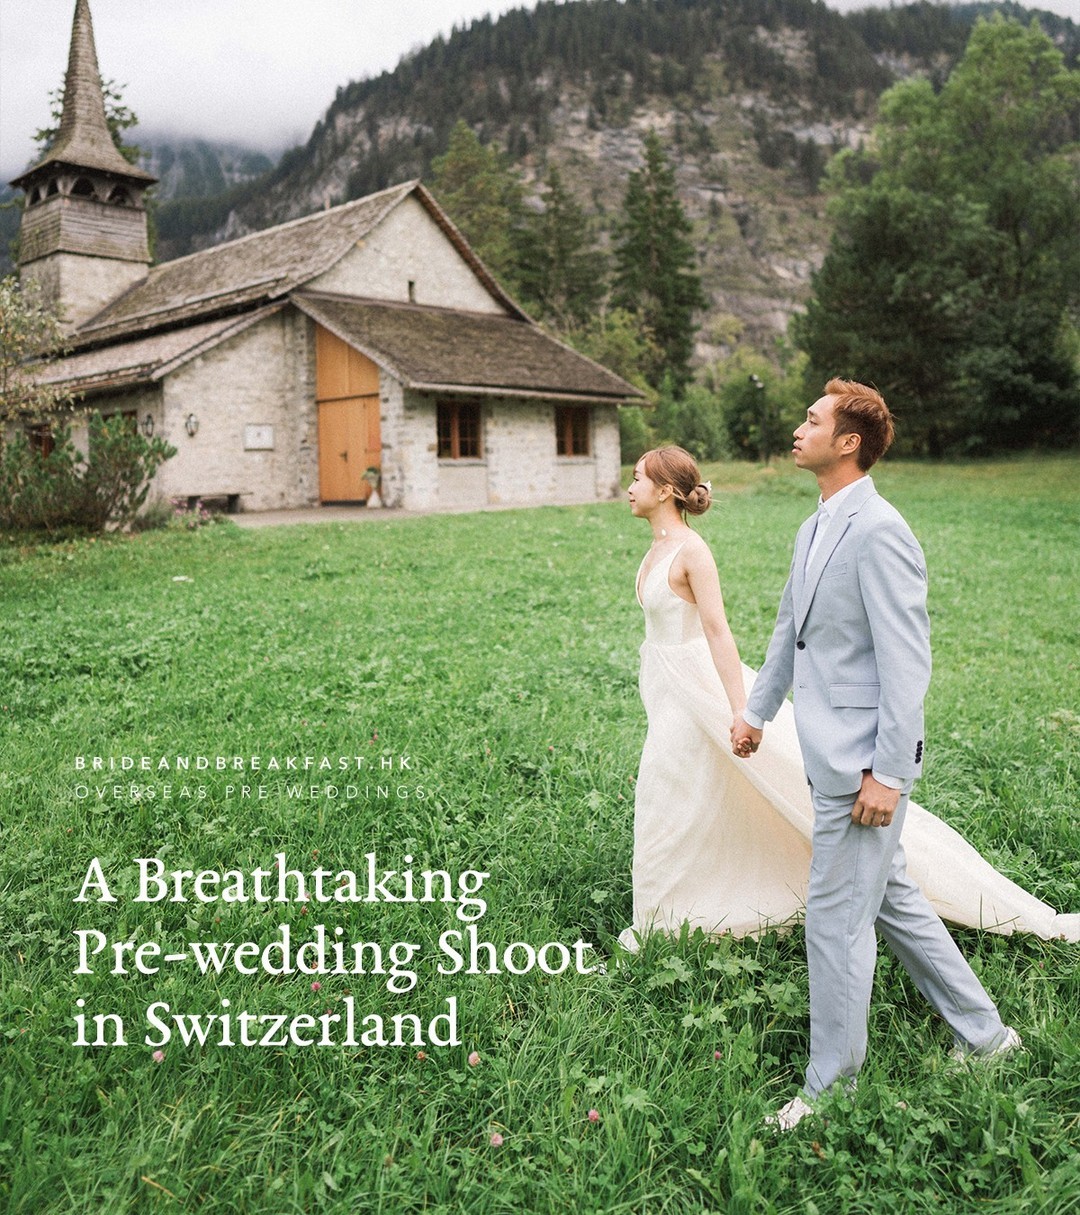 瑞士美景讓這輯婚紗照閃耀動人！即到內文欣賞這對新人的美麗旅程。💚⁠
⁠
Switzerland\\\\\\\\\\\\\\\'s beauty shines in these captivating pre-wedding photos! See more of this lovely couple\\\\\\\\\\\\\\\'s journey at the 🔗 in our bio. 💚⁠
⁠
Photographer @sham2photography